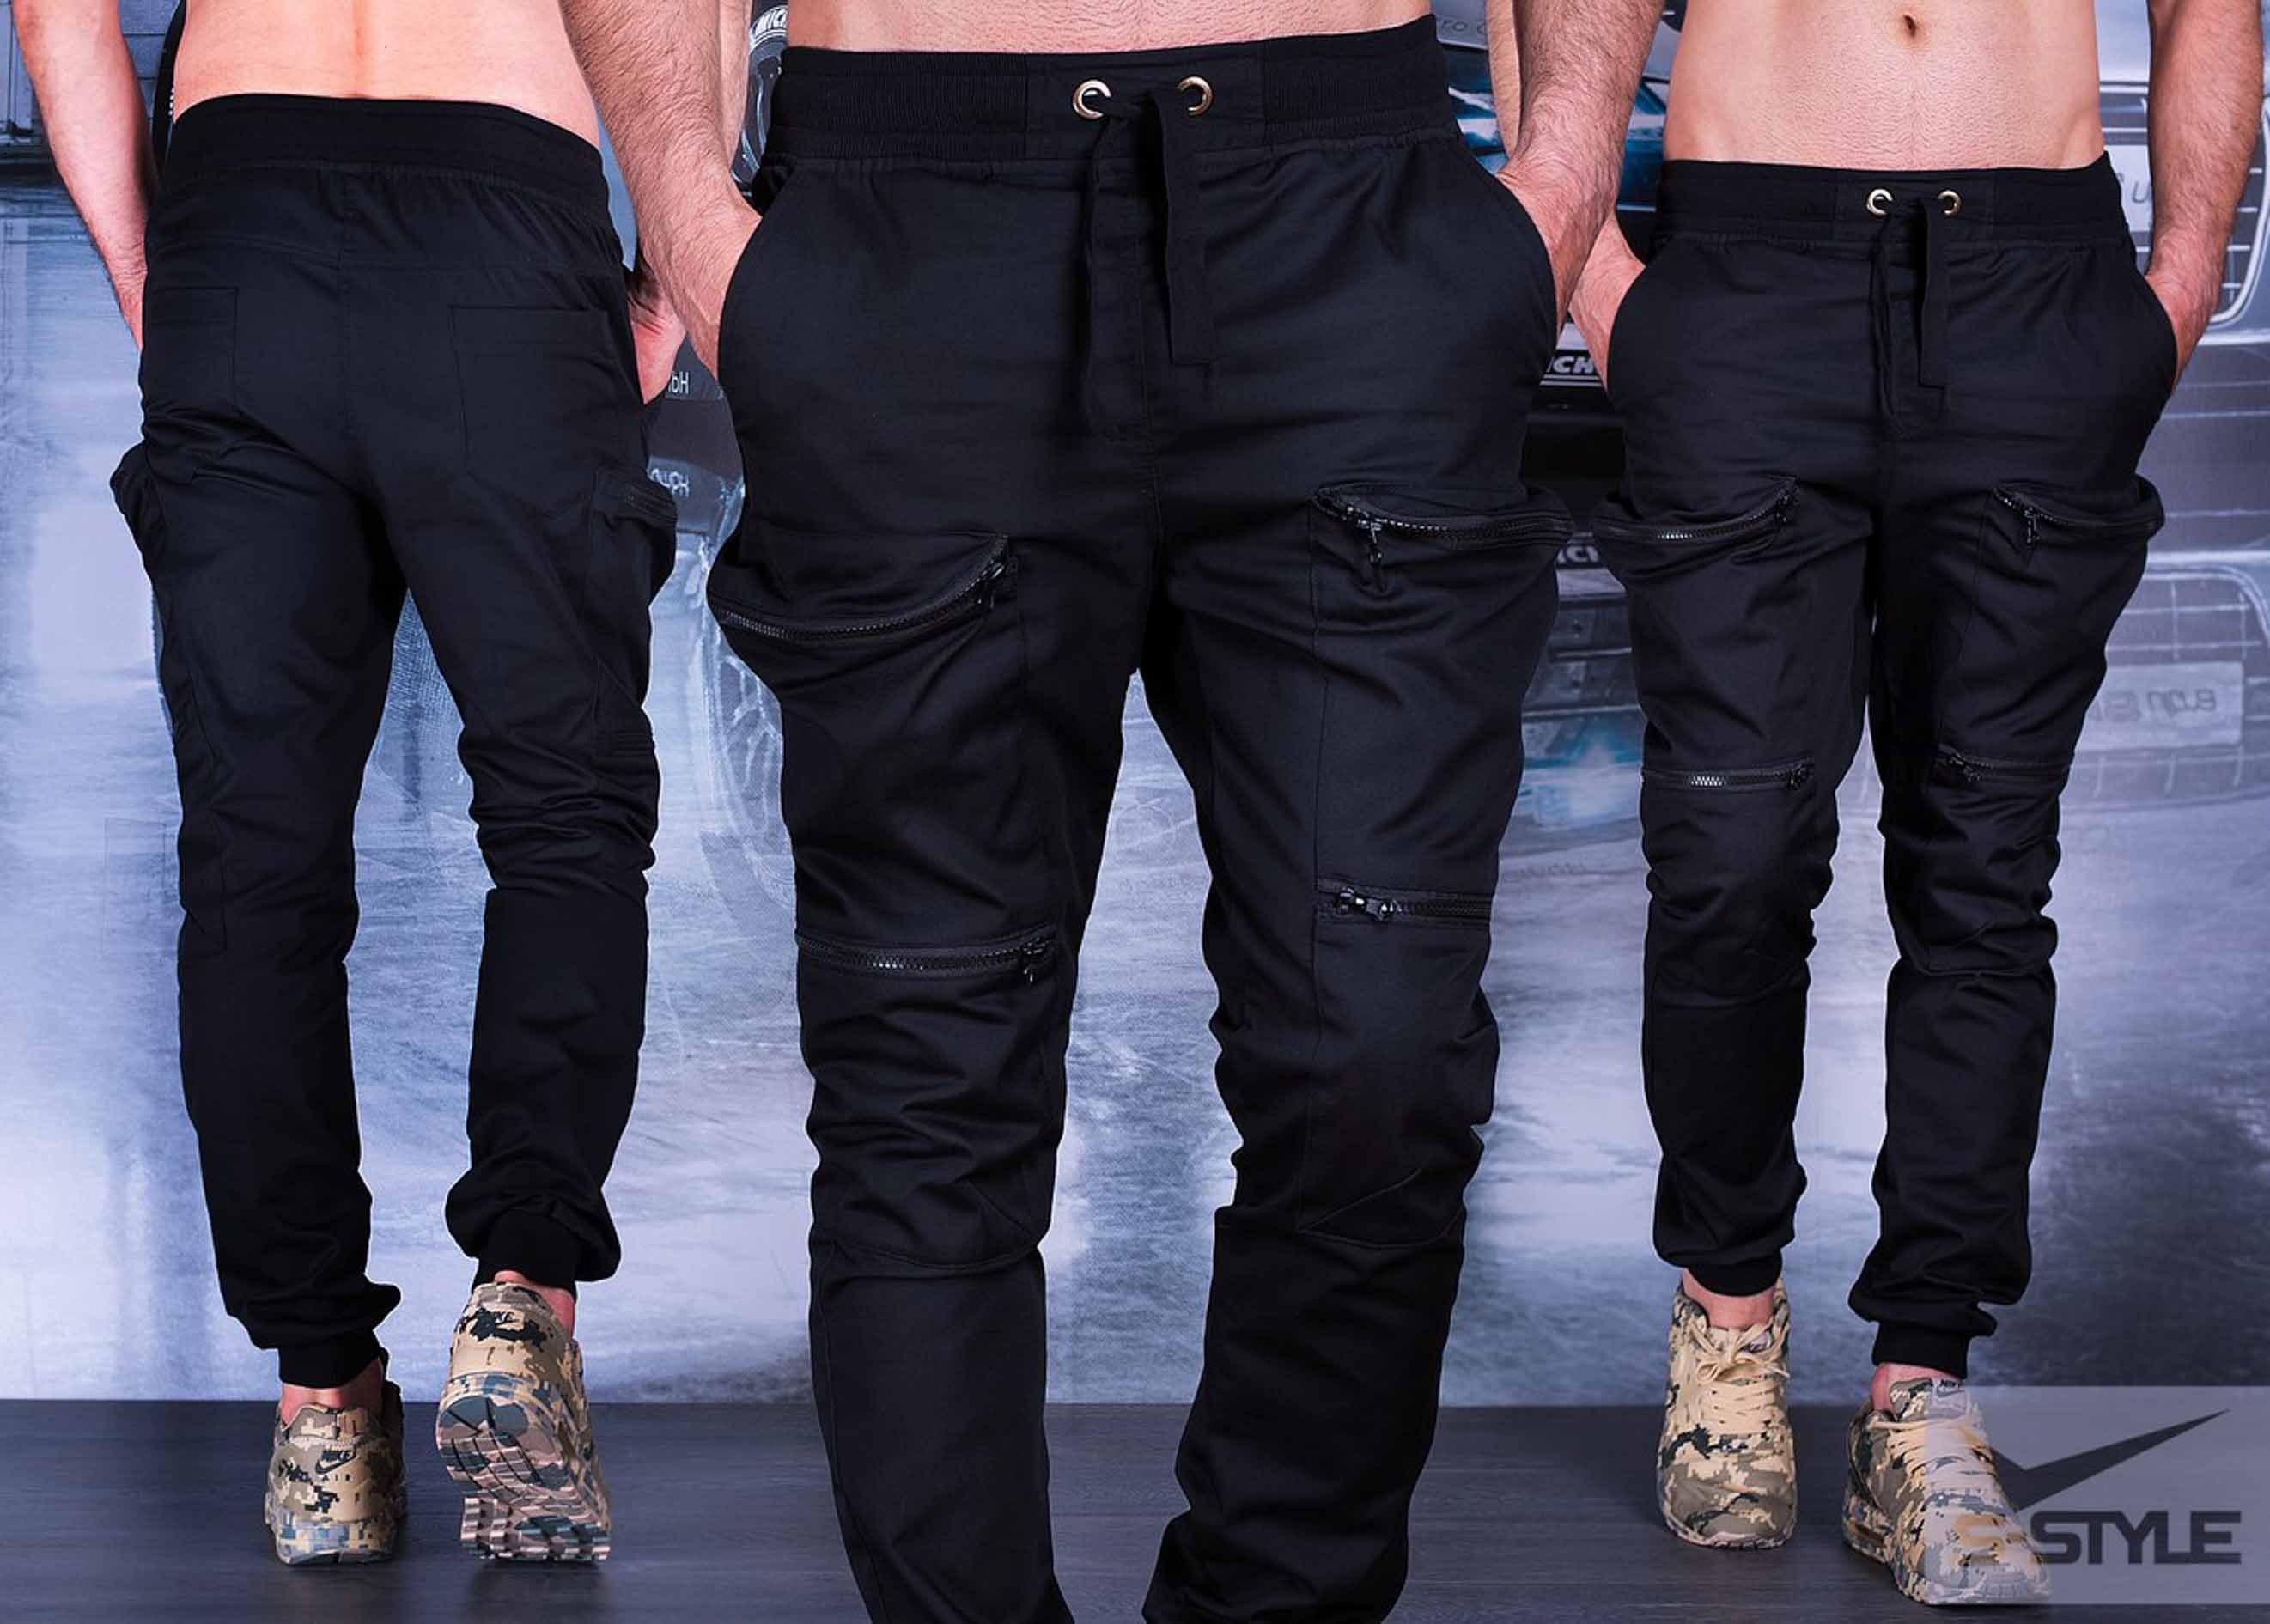 Купить недорогие штаны мужские. Брюки мужские. Черные штаны. Штаны на резинке мужские. Штаны джинсы мужские.